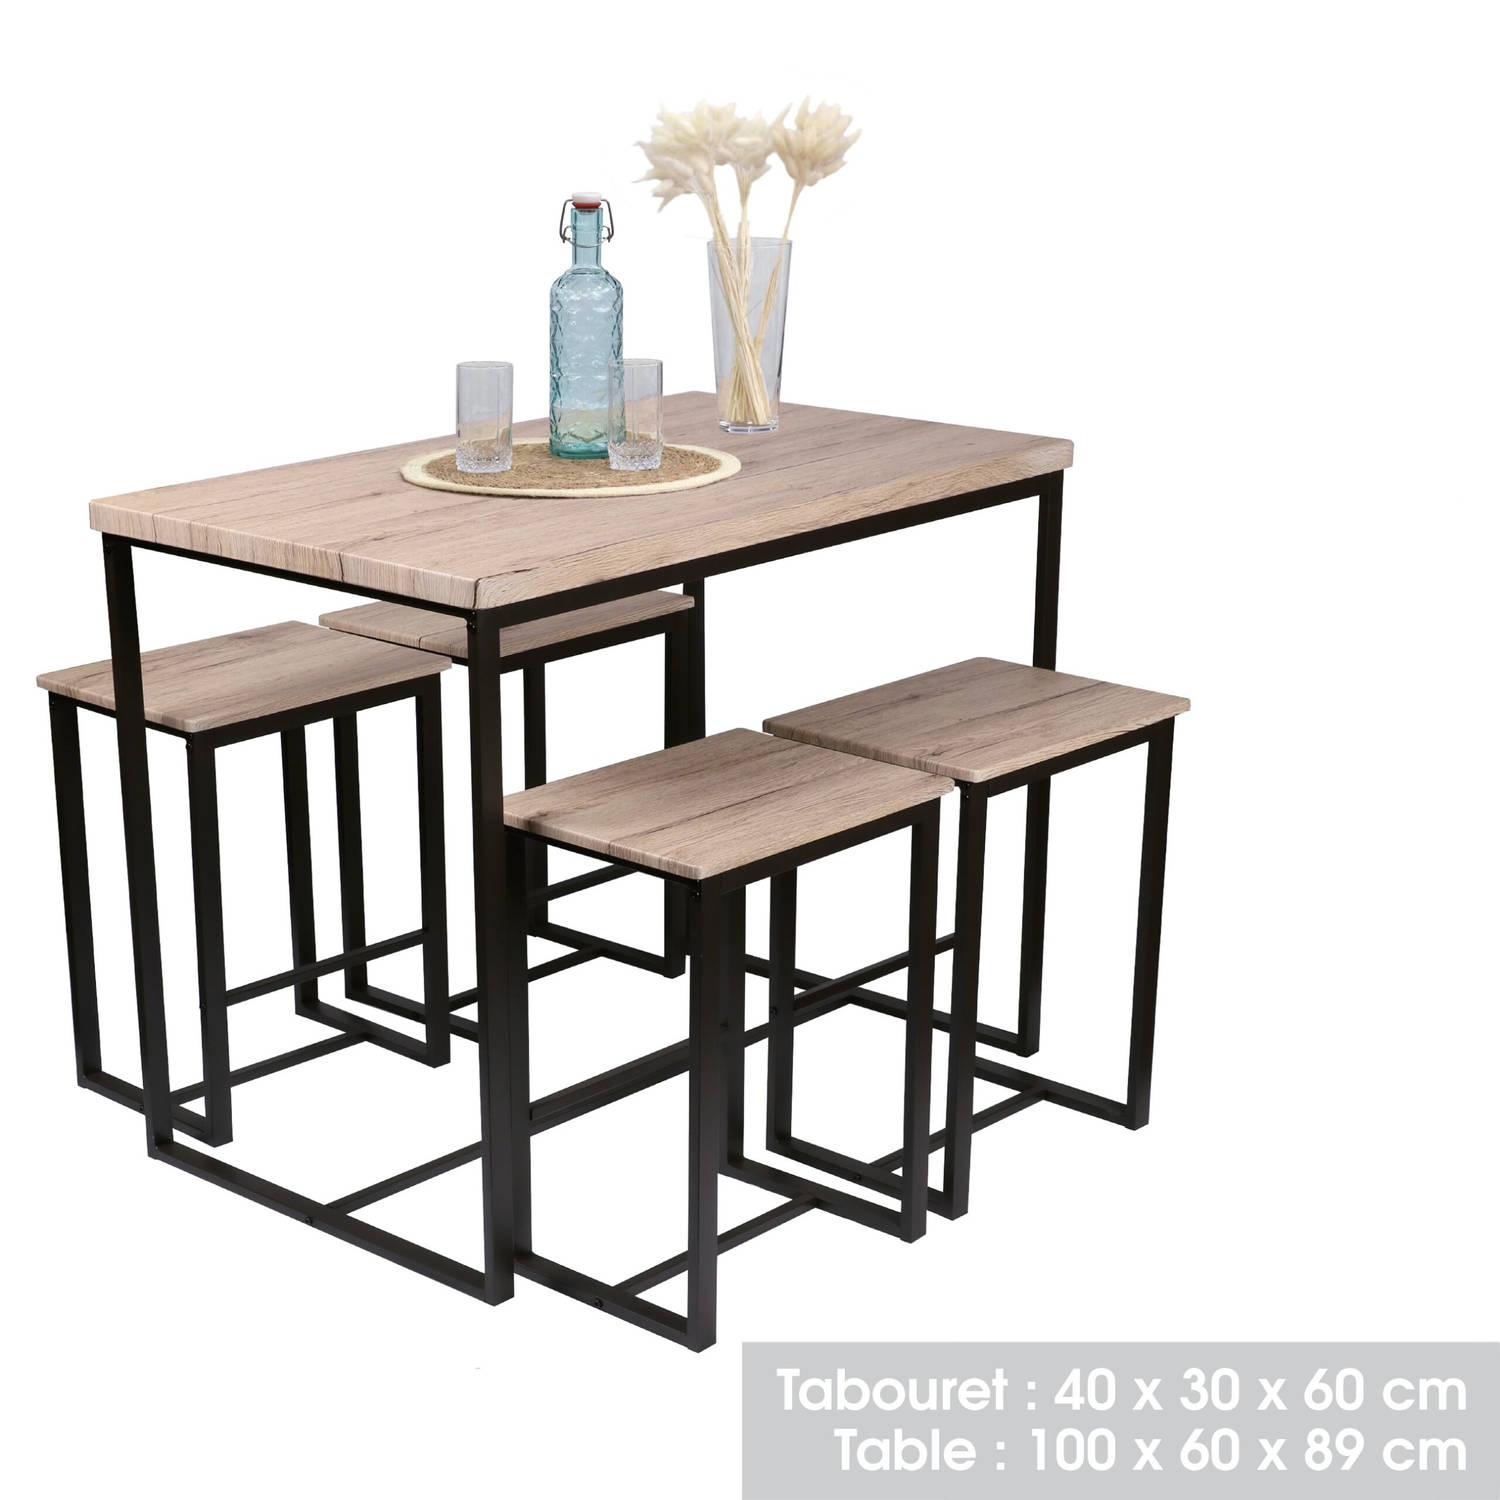 Gebor - Hoge tafel - Bartafel - Barstoelen - Barkrukken - Industrieel - Set - Hout - - Metaal - Stoer | Blokker